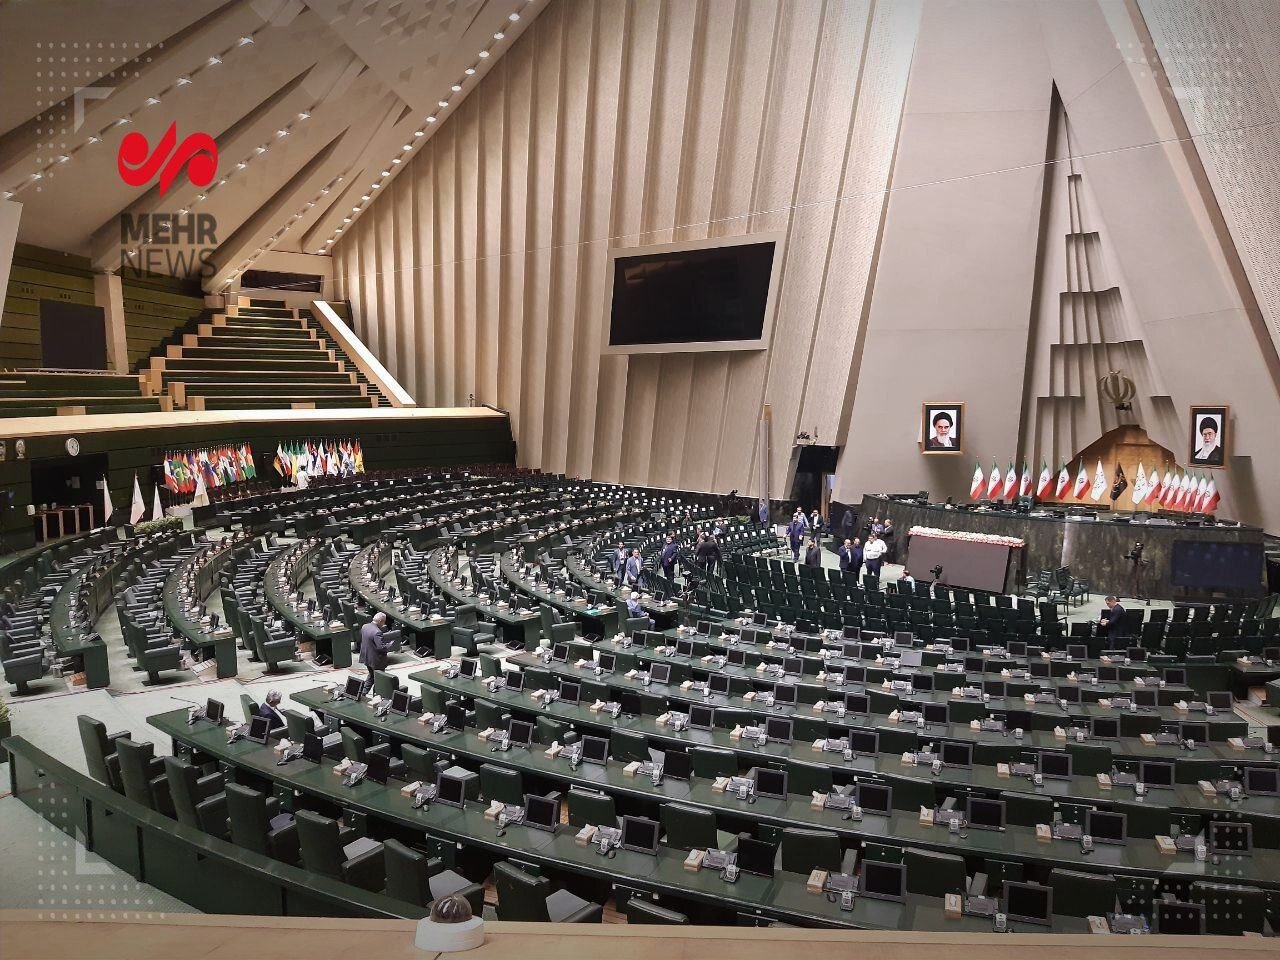 صحن مجلس ساعتی قبل از برگزاری مراسم تحلیف ریاست جمهوری | تصاویر